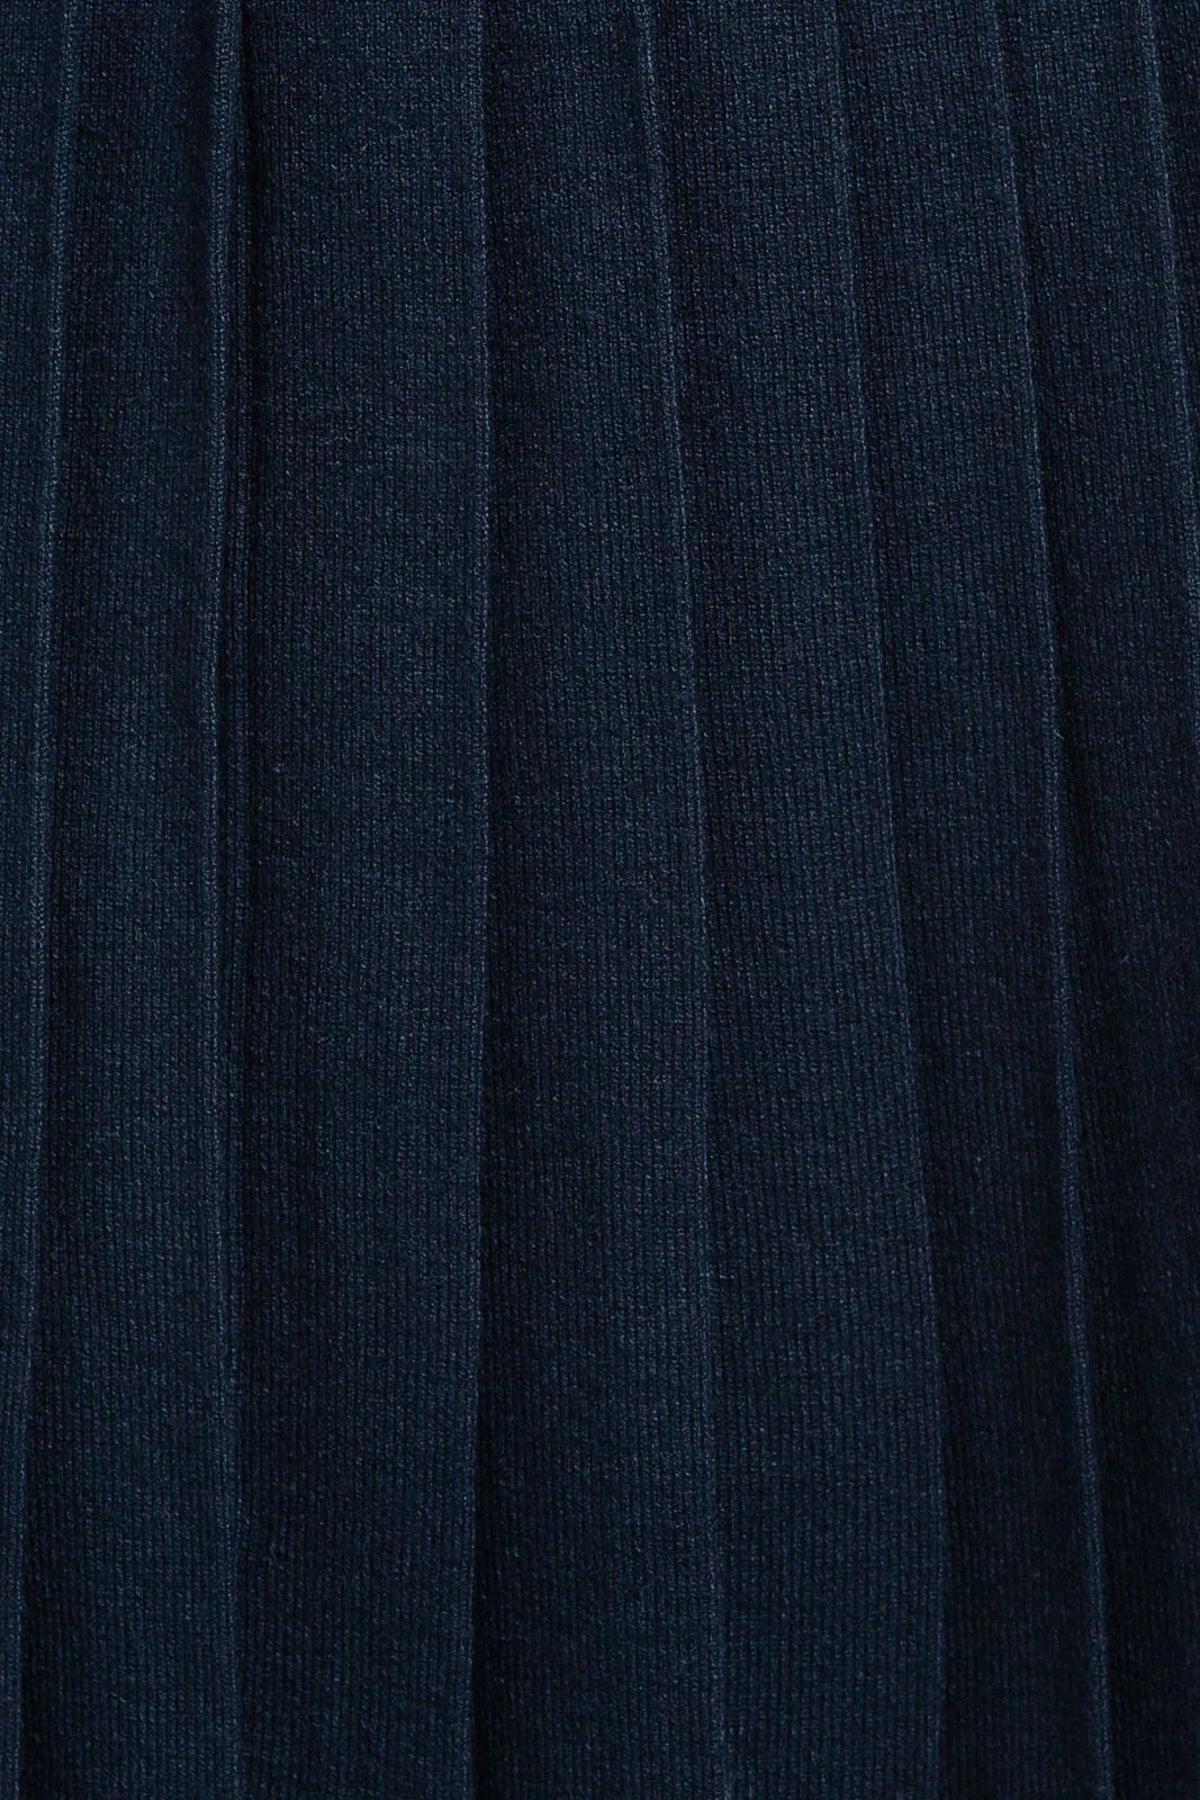 High Waisted Pleated Sweater Mini Skirt - Tasha Apparel Wholesale